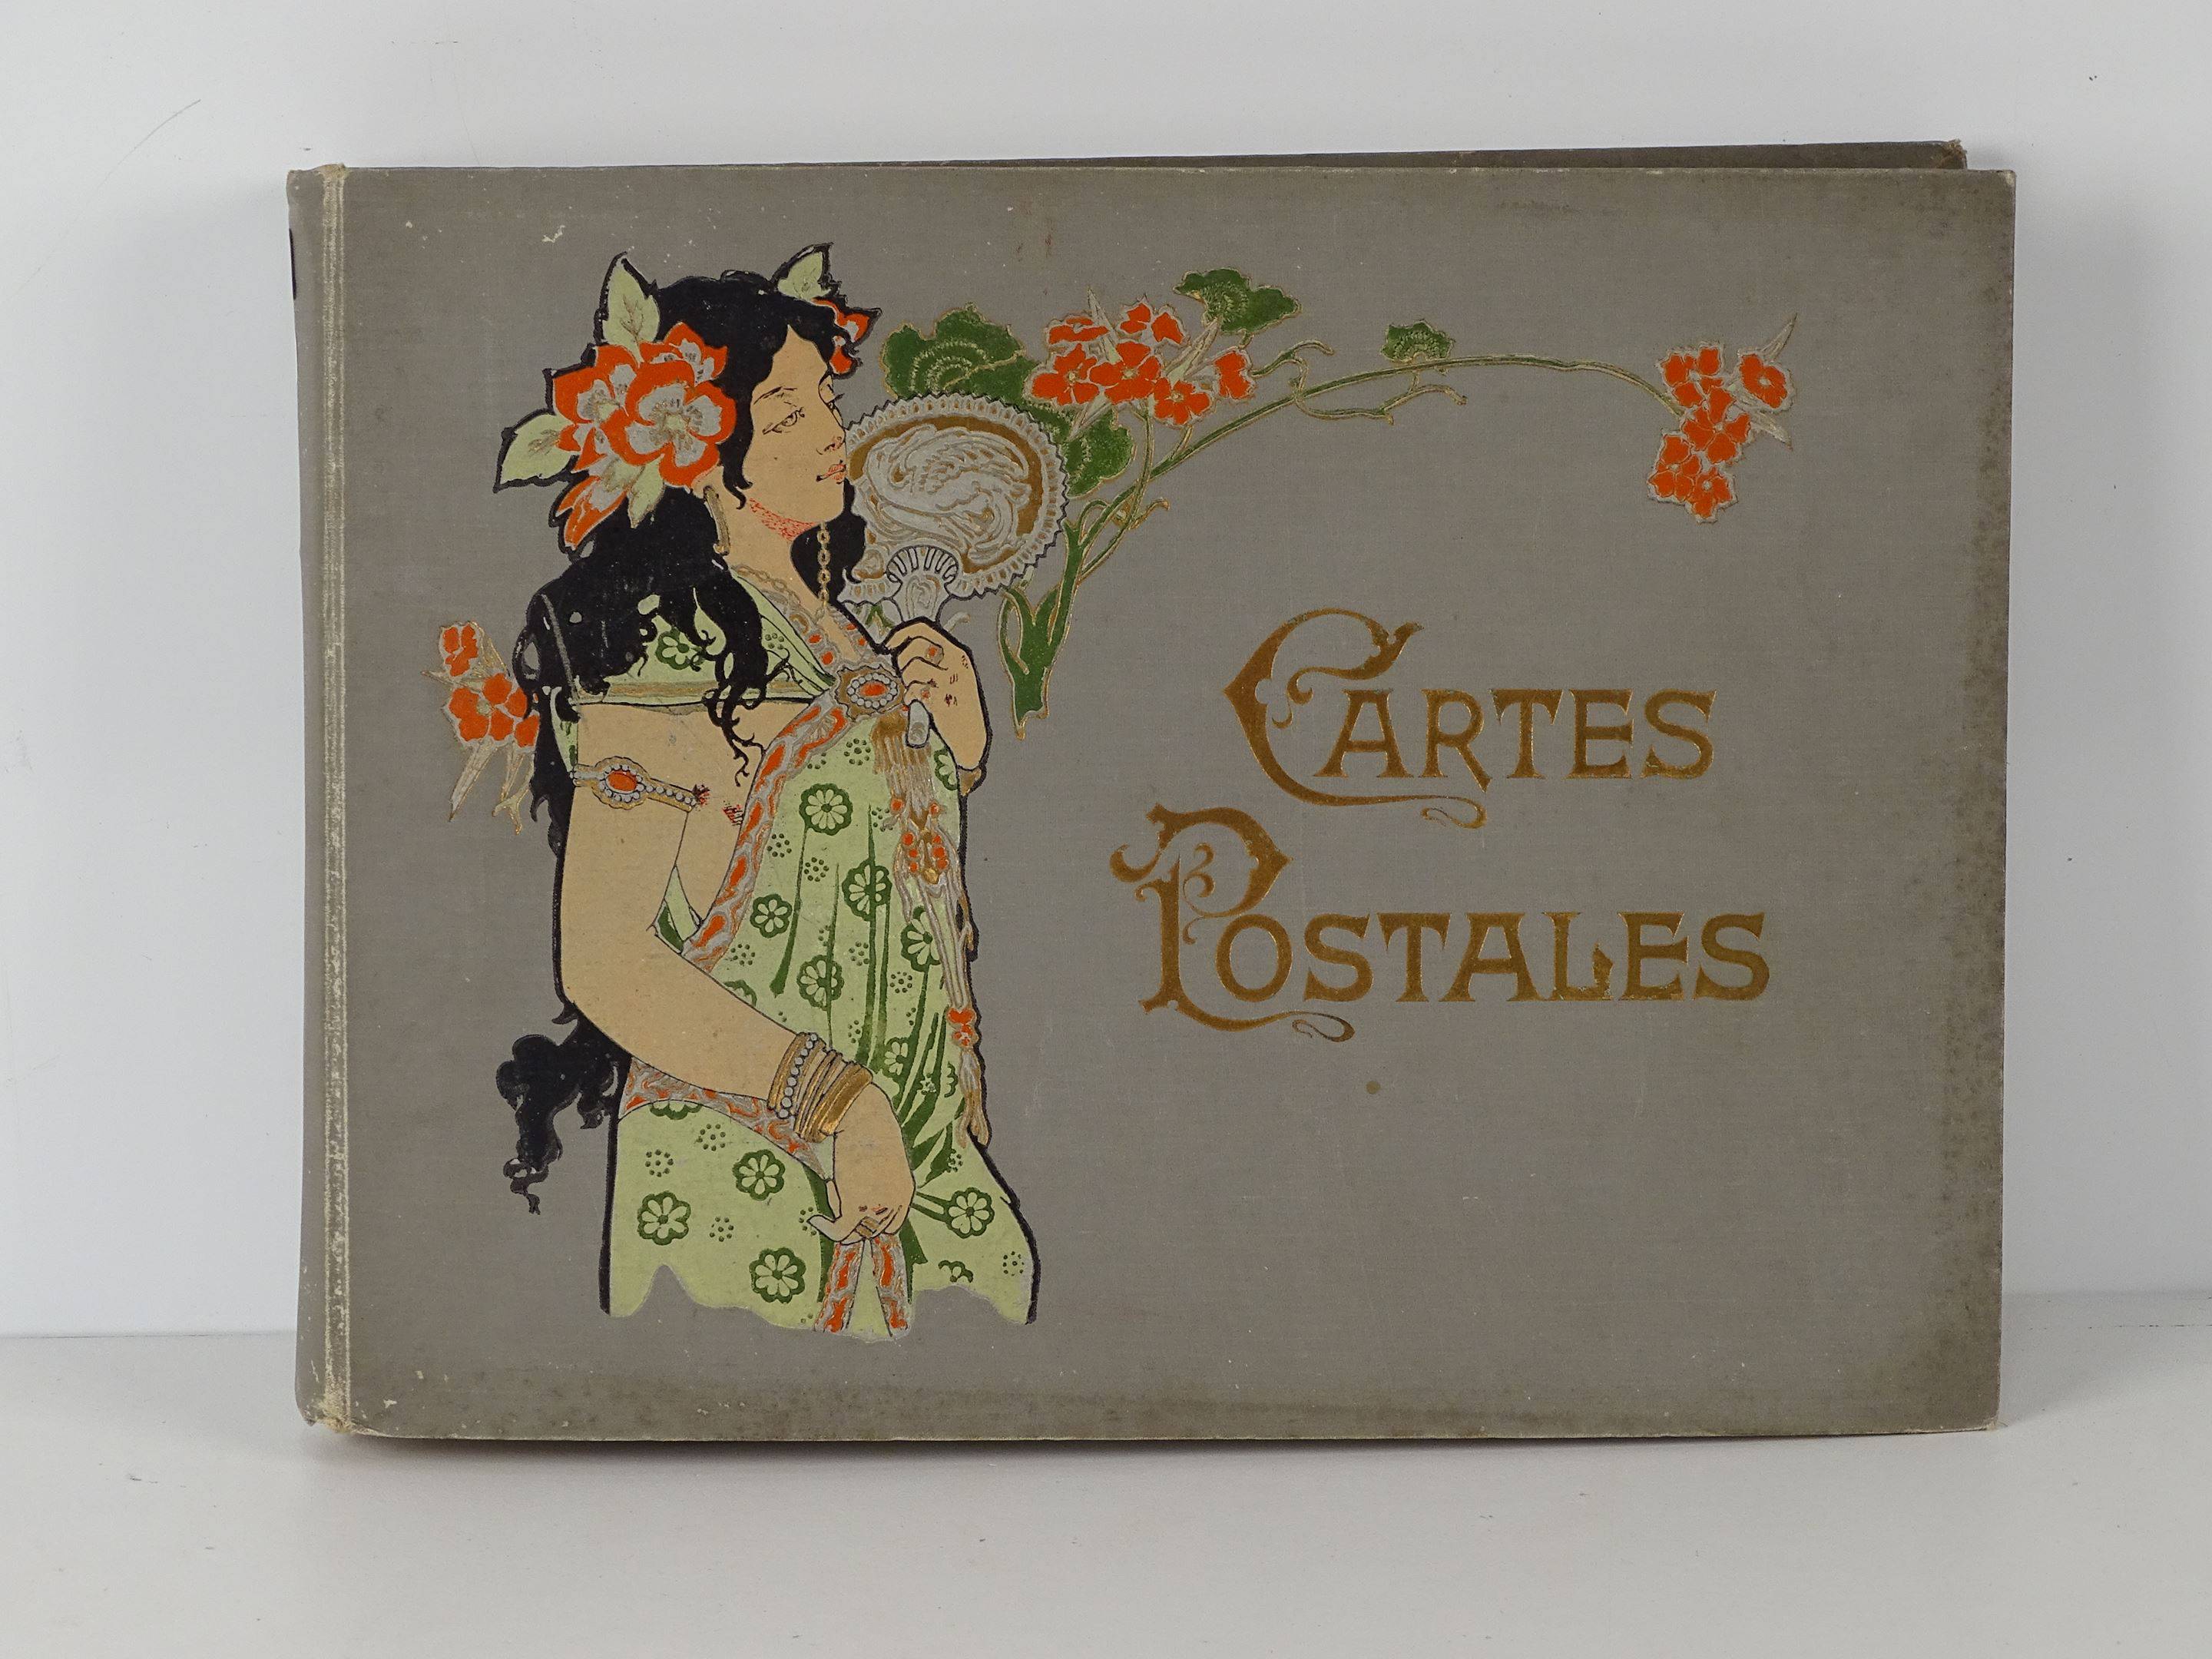 Album de carte postale vide la couverture à décor d'une femme art nouveau,  Vente aux enchères : Cartes postales - Vieux papiers